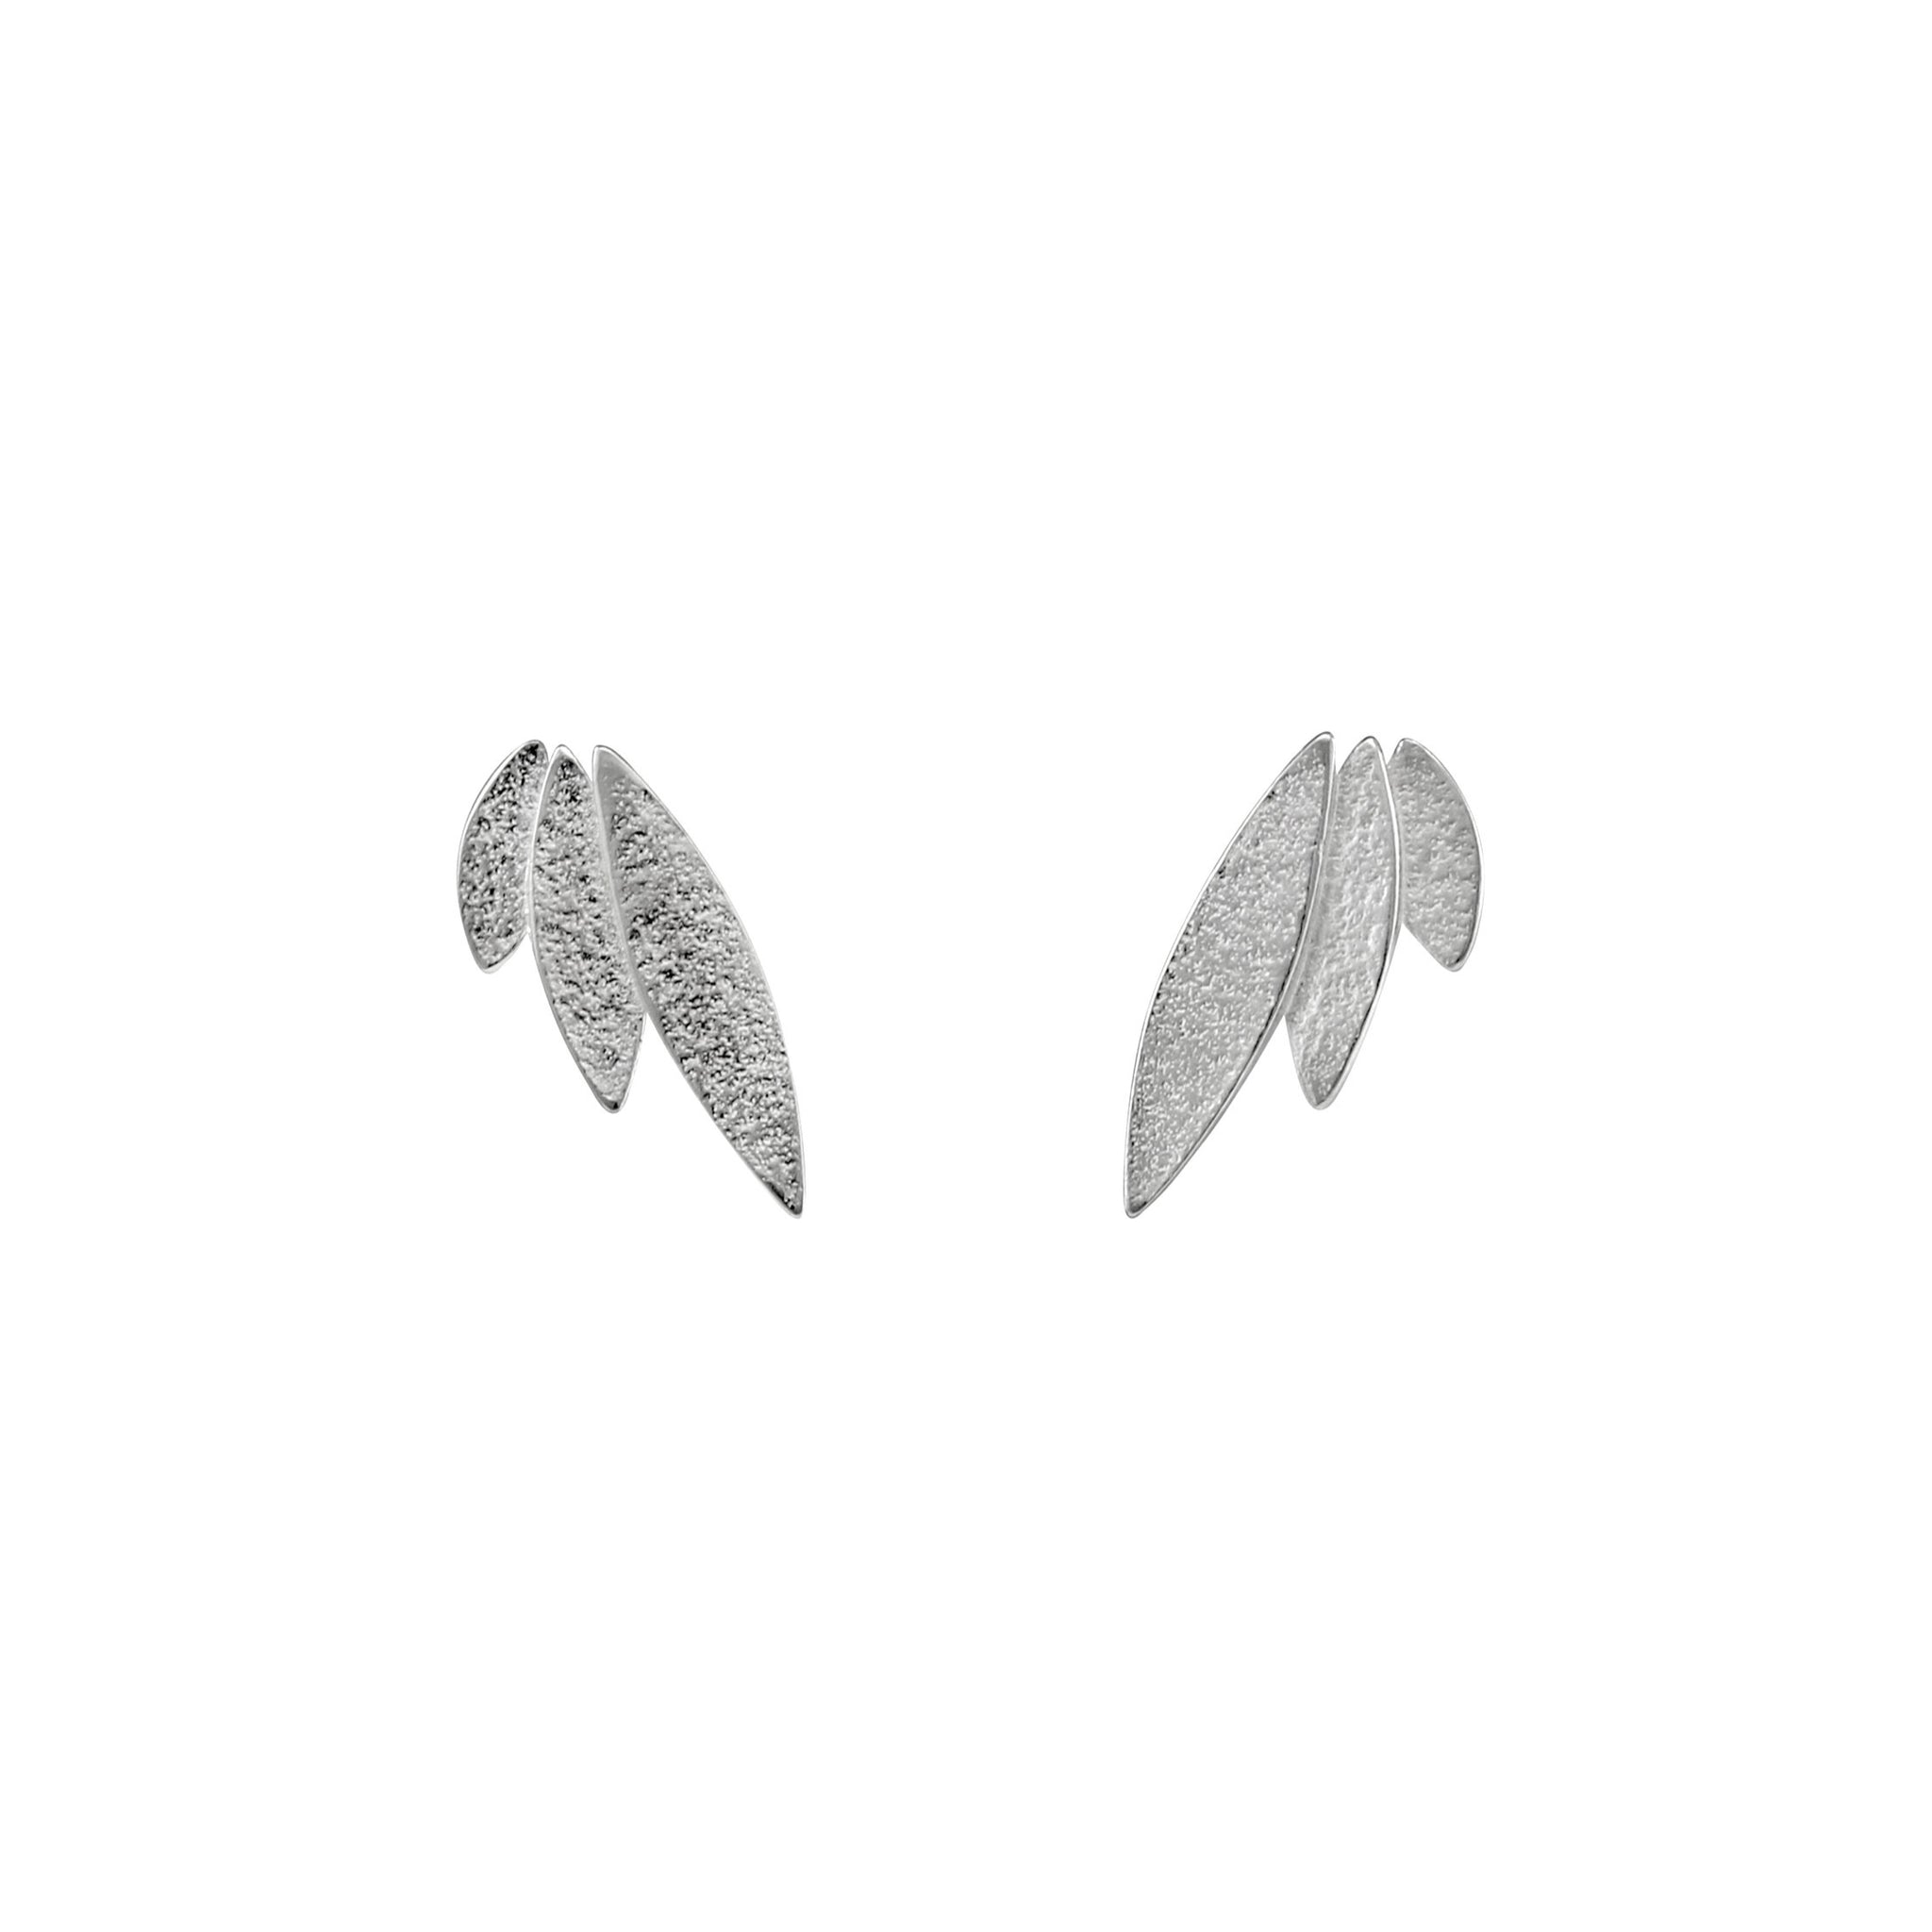 Icarus Silver Stud Earrings